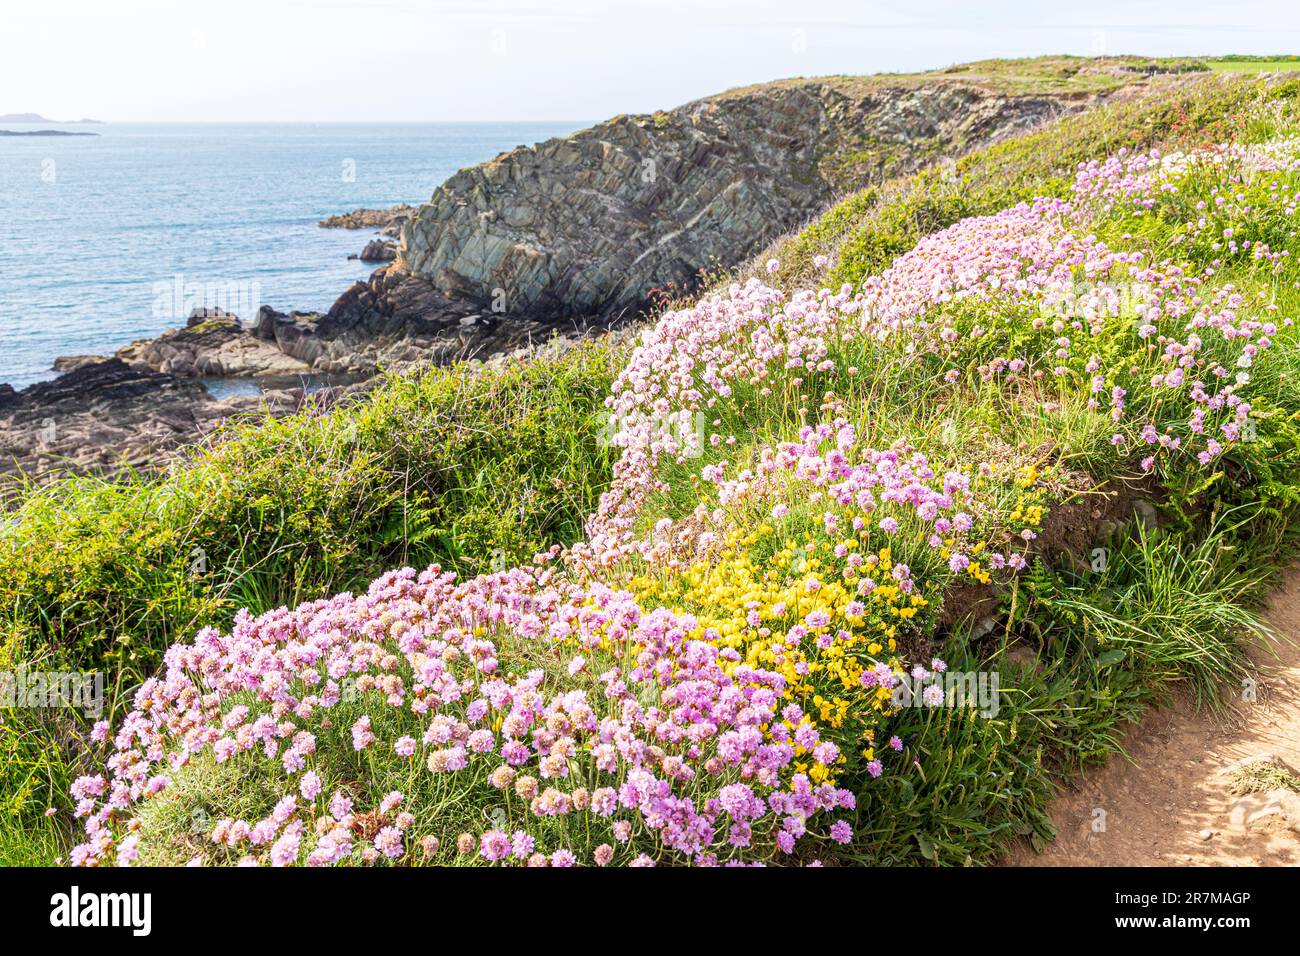 Des roses de mer (thrift) fleurissent à St Justins, sur la péninsule de St David, Pembrokeshire, pays de Galles, Royaume-Uni. Banque D'Images